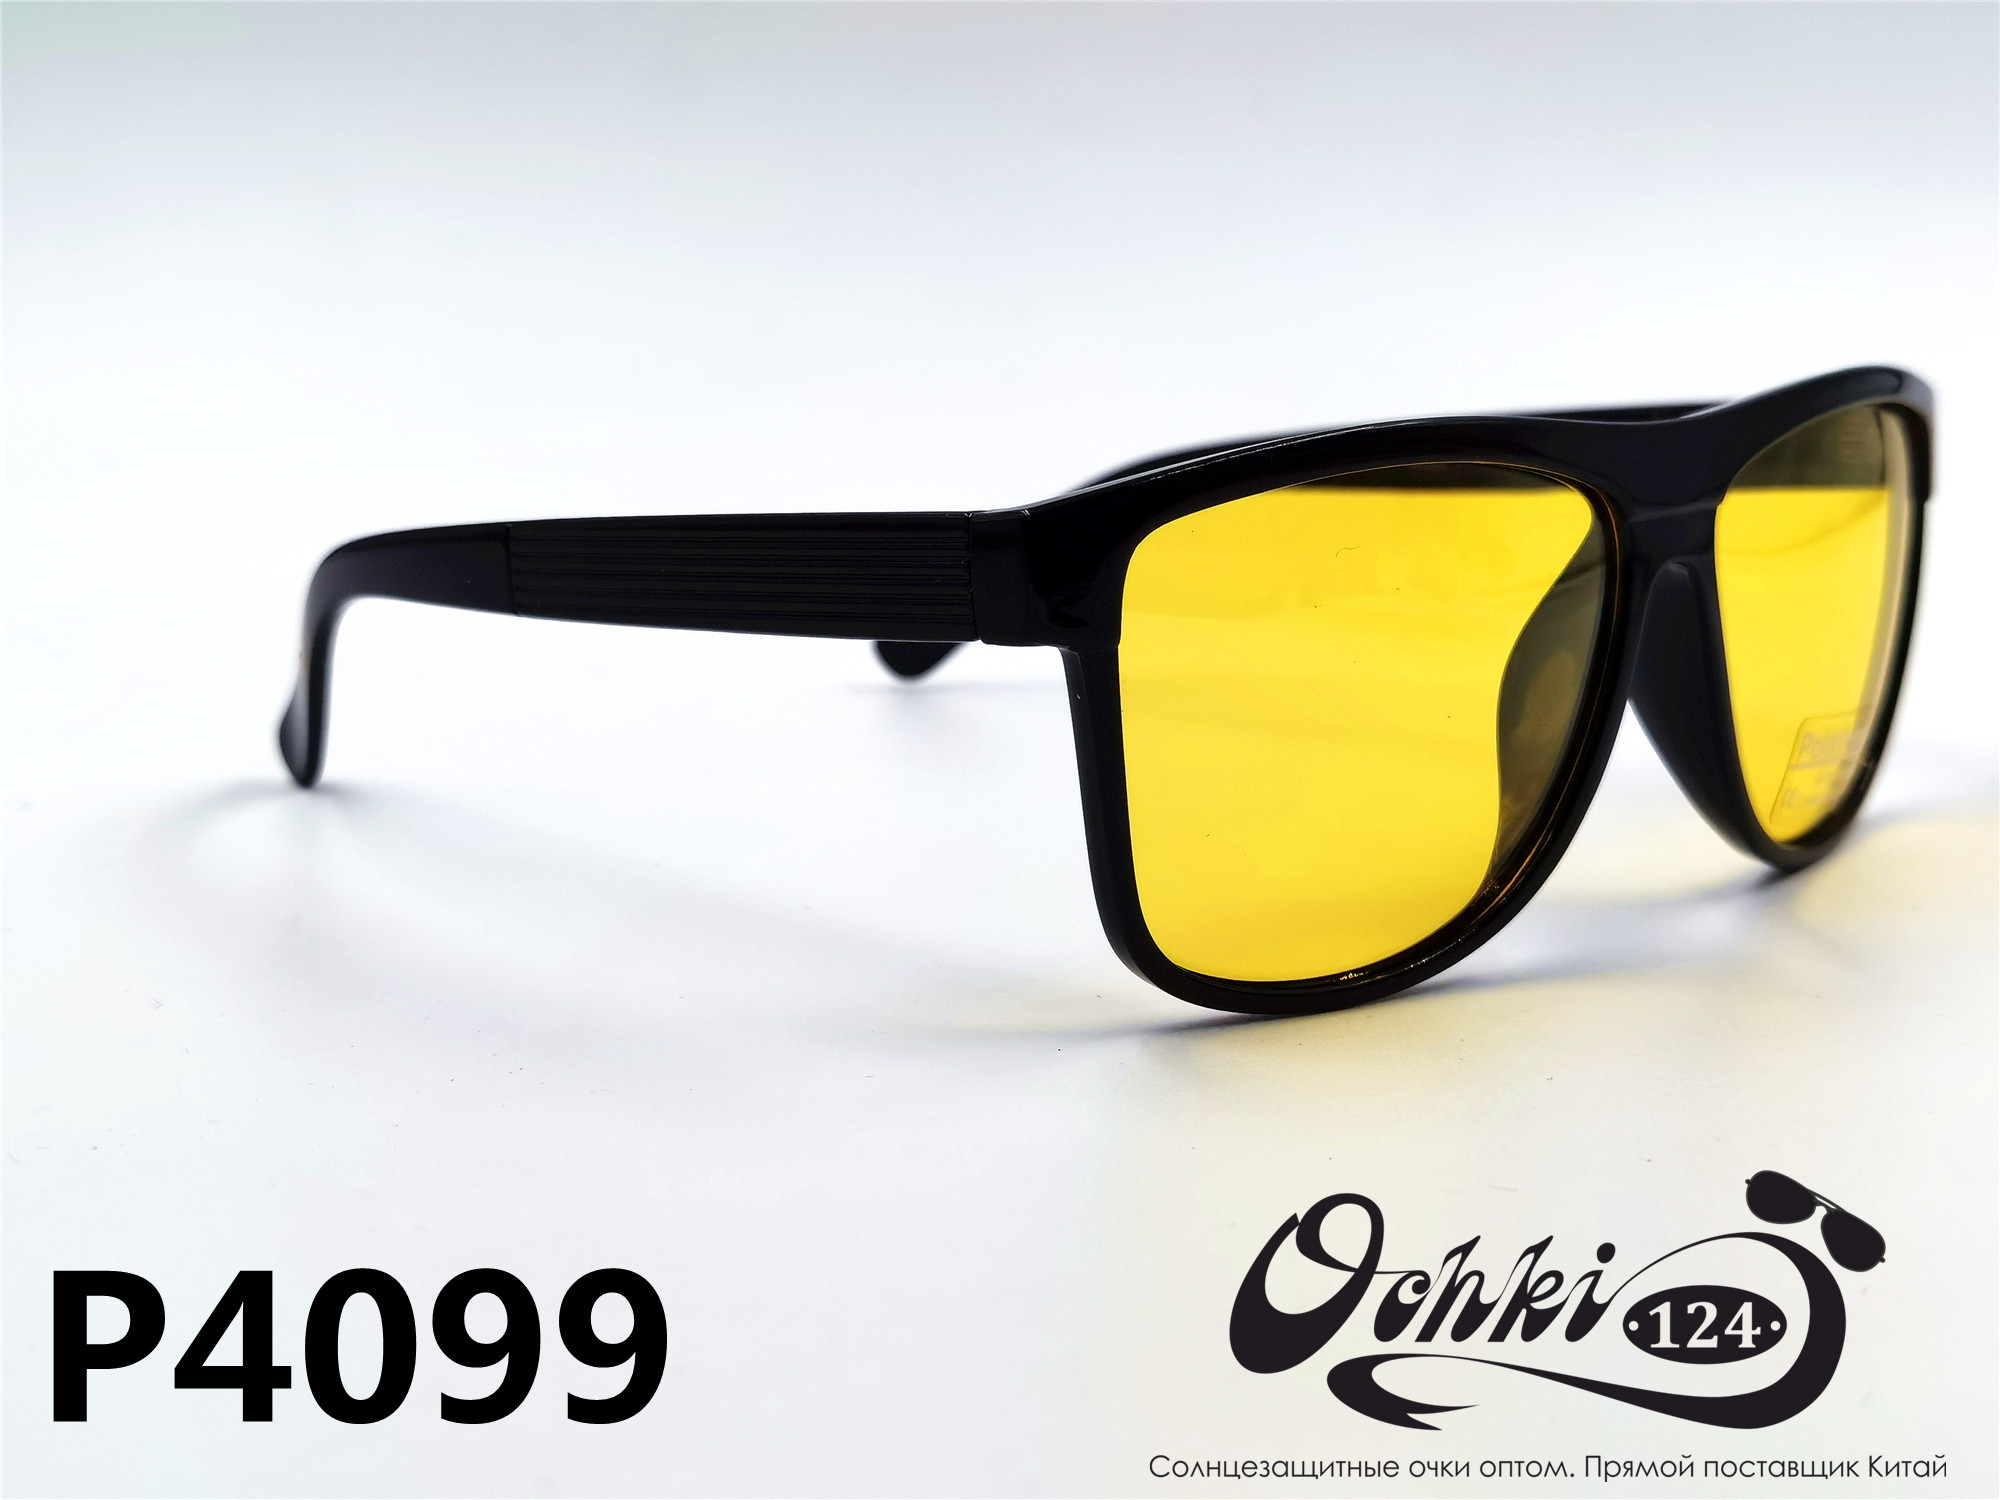  Солнцезащитные очки картинка 2022 Мужские Поляризованные Квадратные Materice P4099-7 